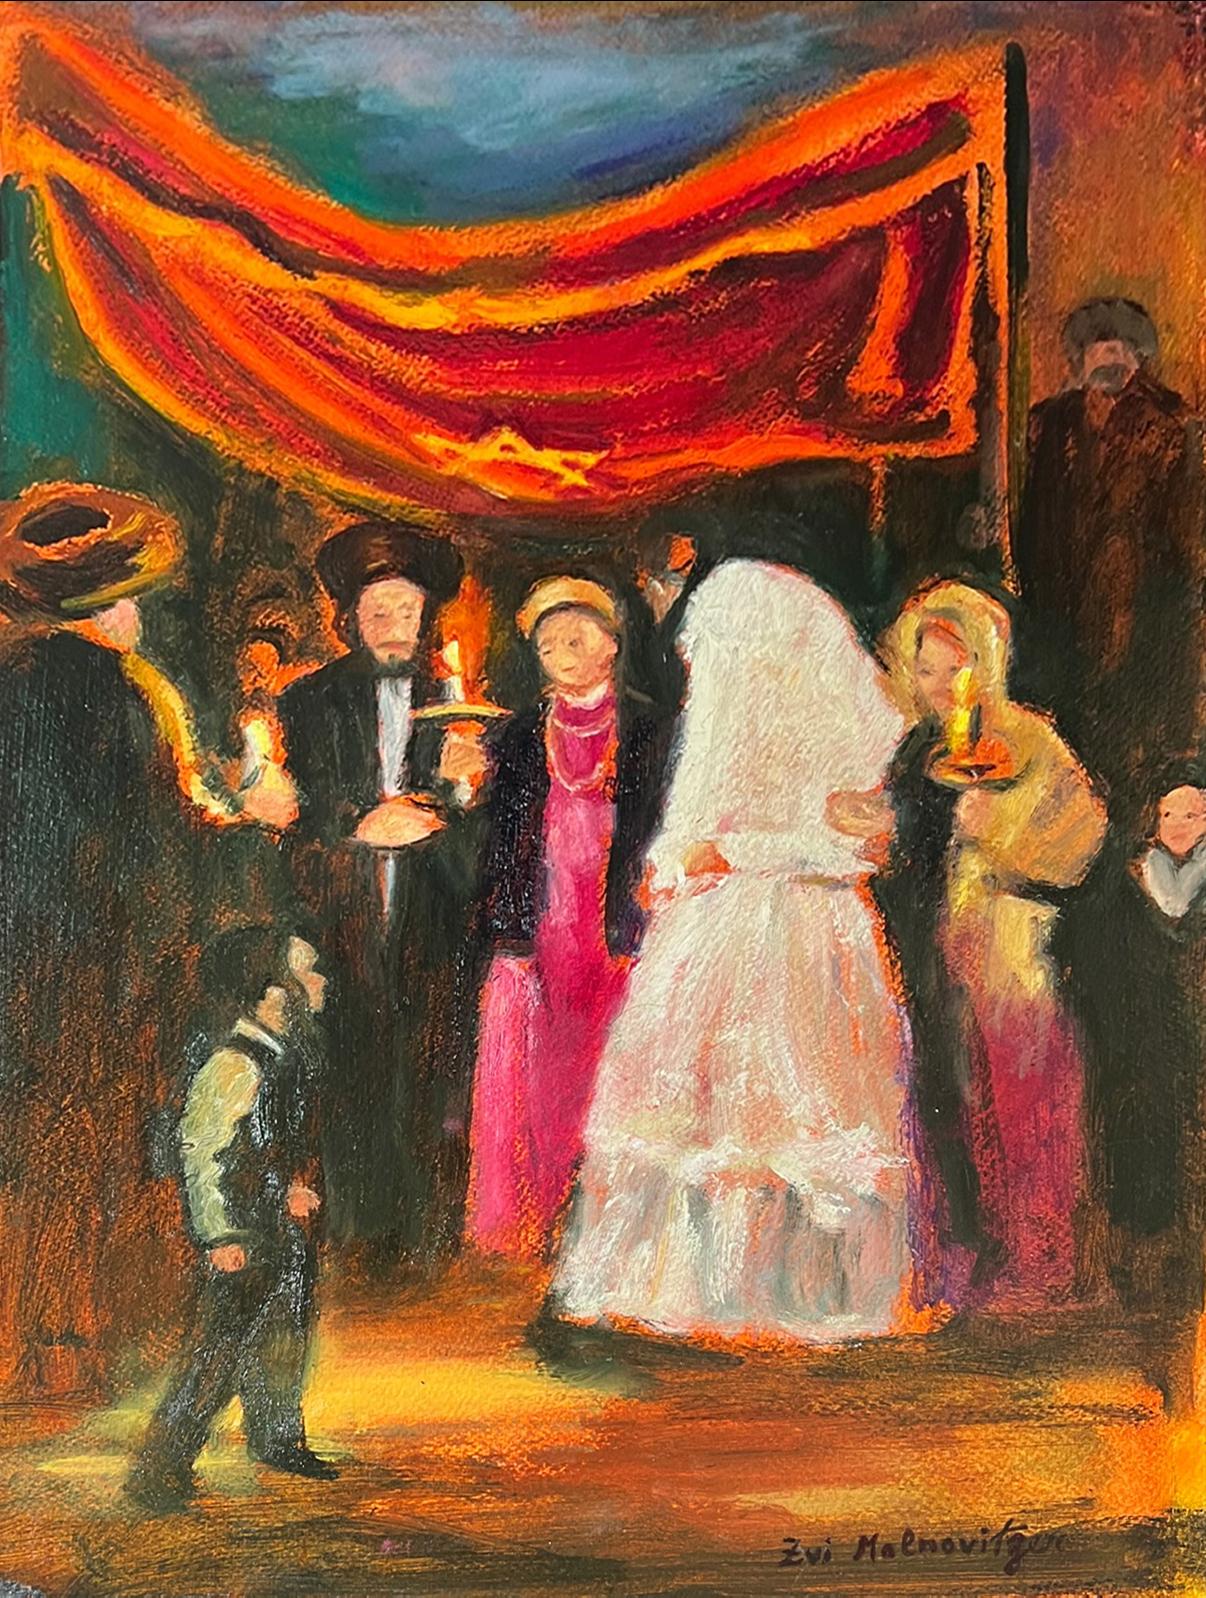 Le tableau représentant un mariage juif hassidique, scène de Hupah, est une peinture passionnante et colorée de l'artiste israélien Zvi Malnovitzer.